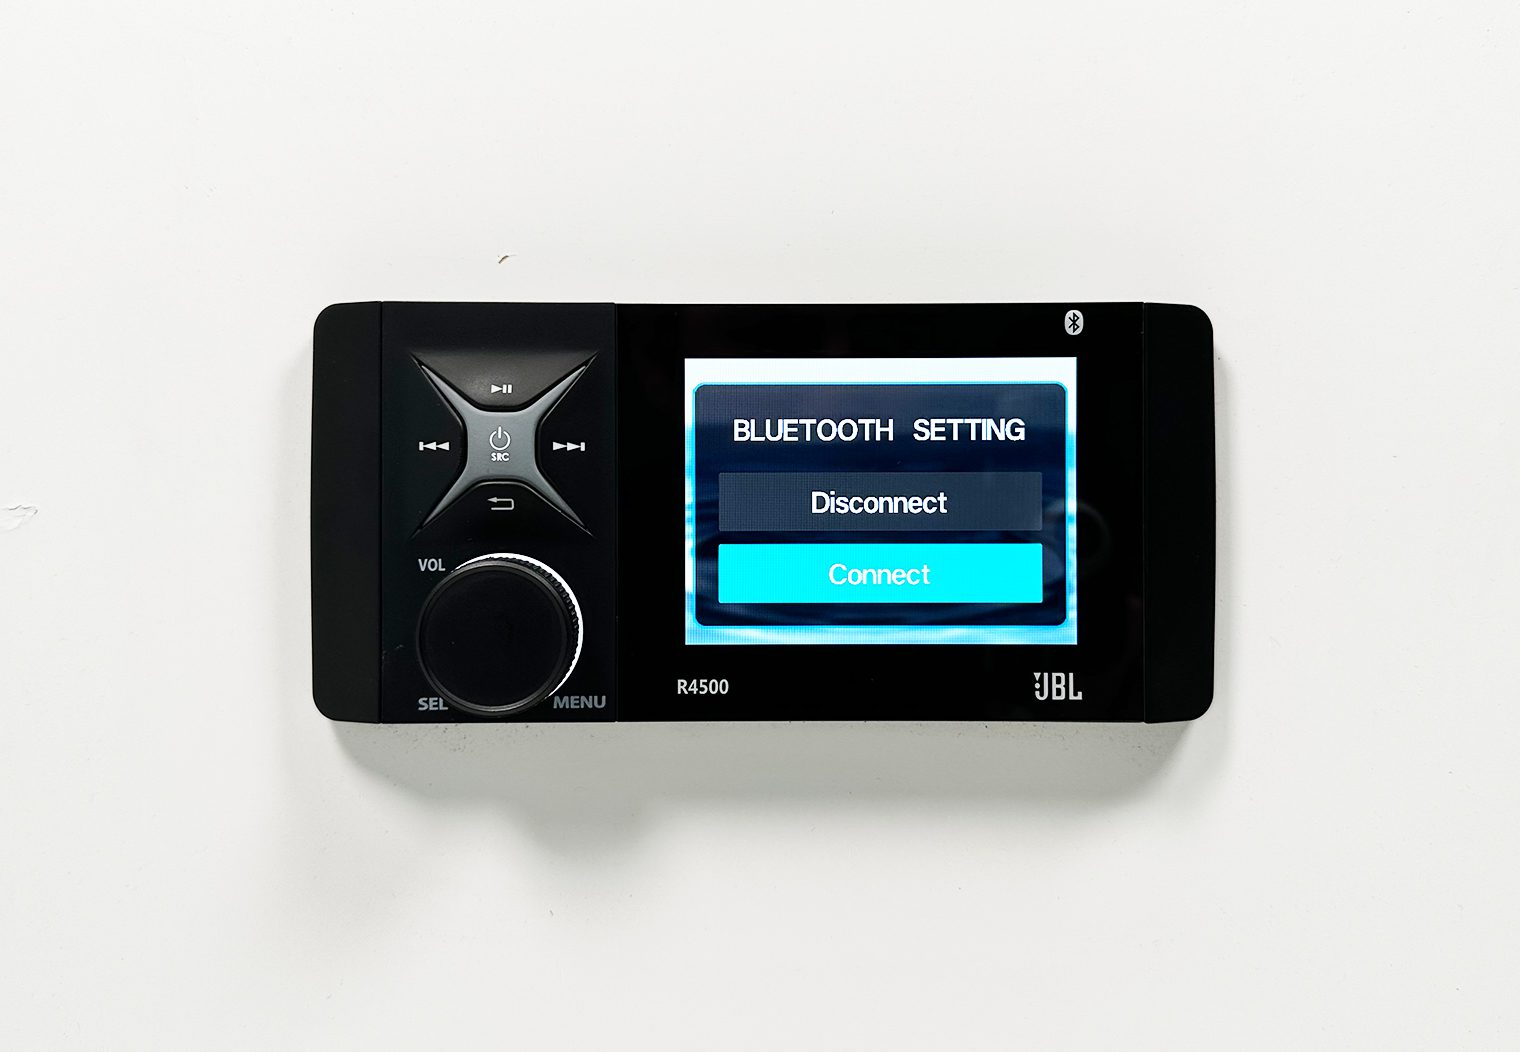 JBL R4500 bluetooth setting